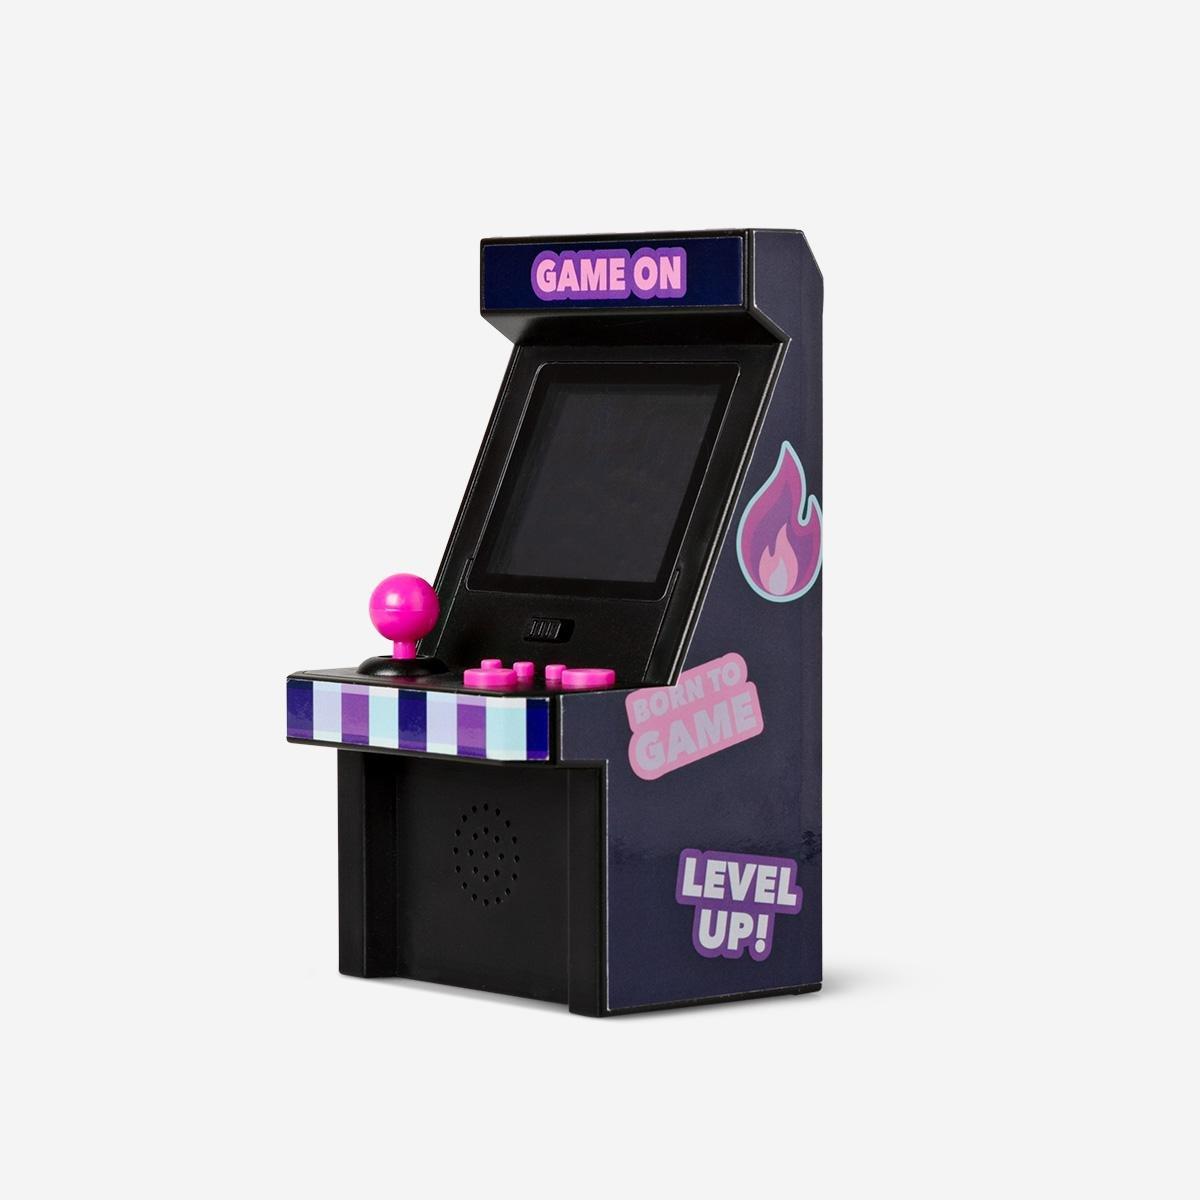 Black arcade machine